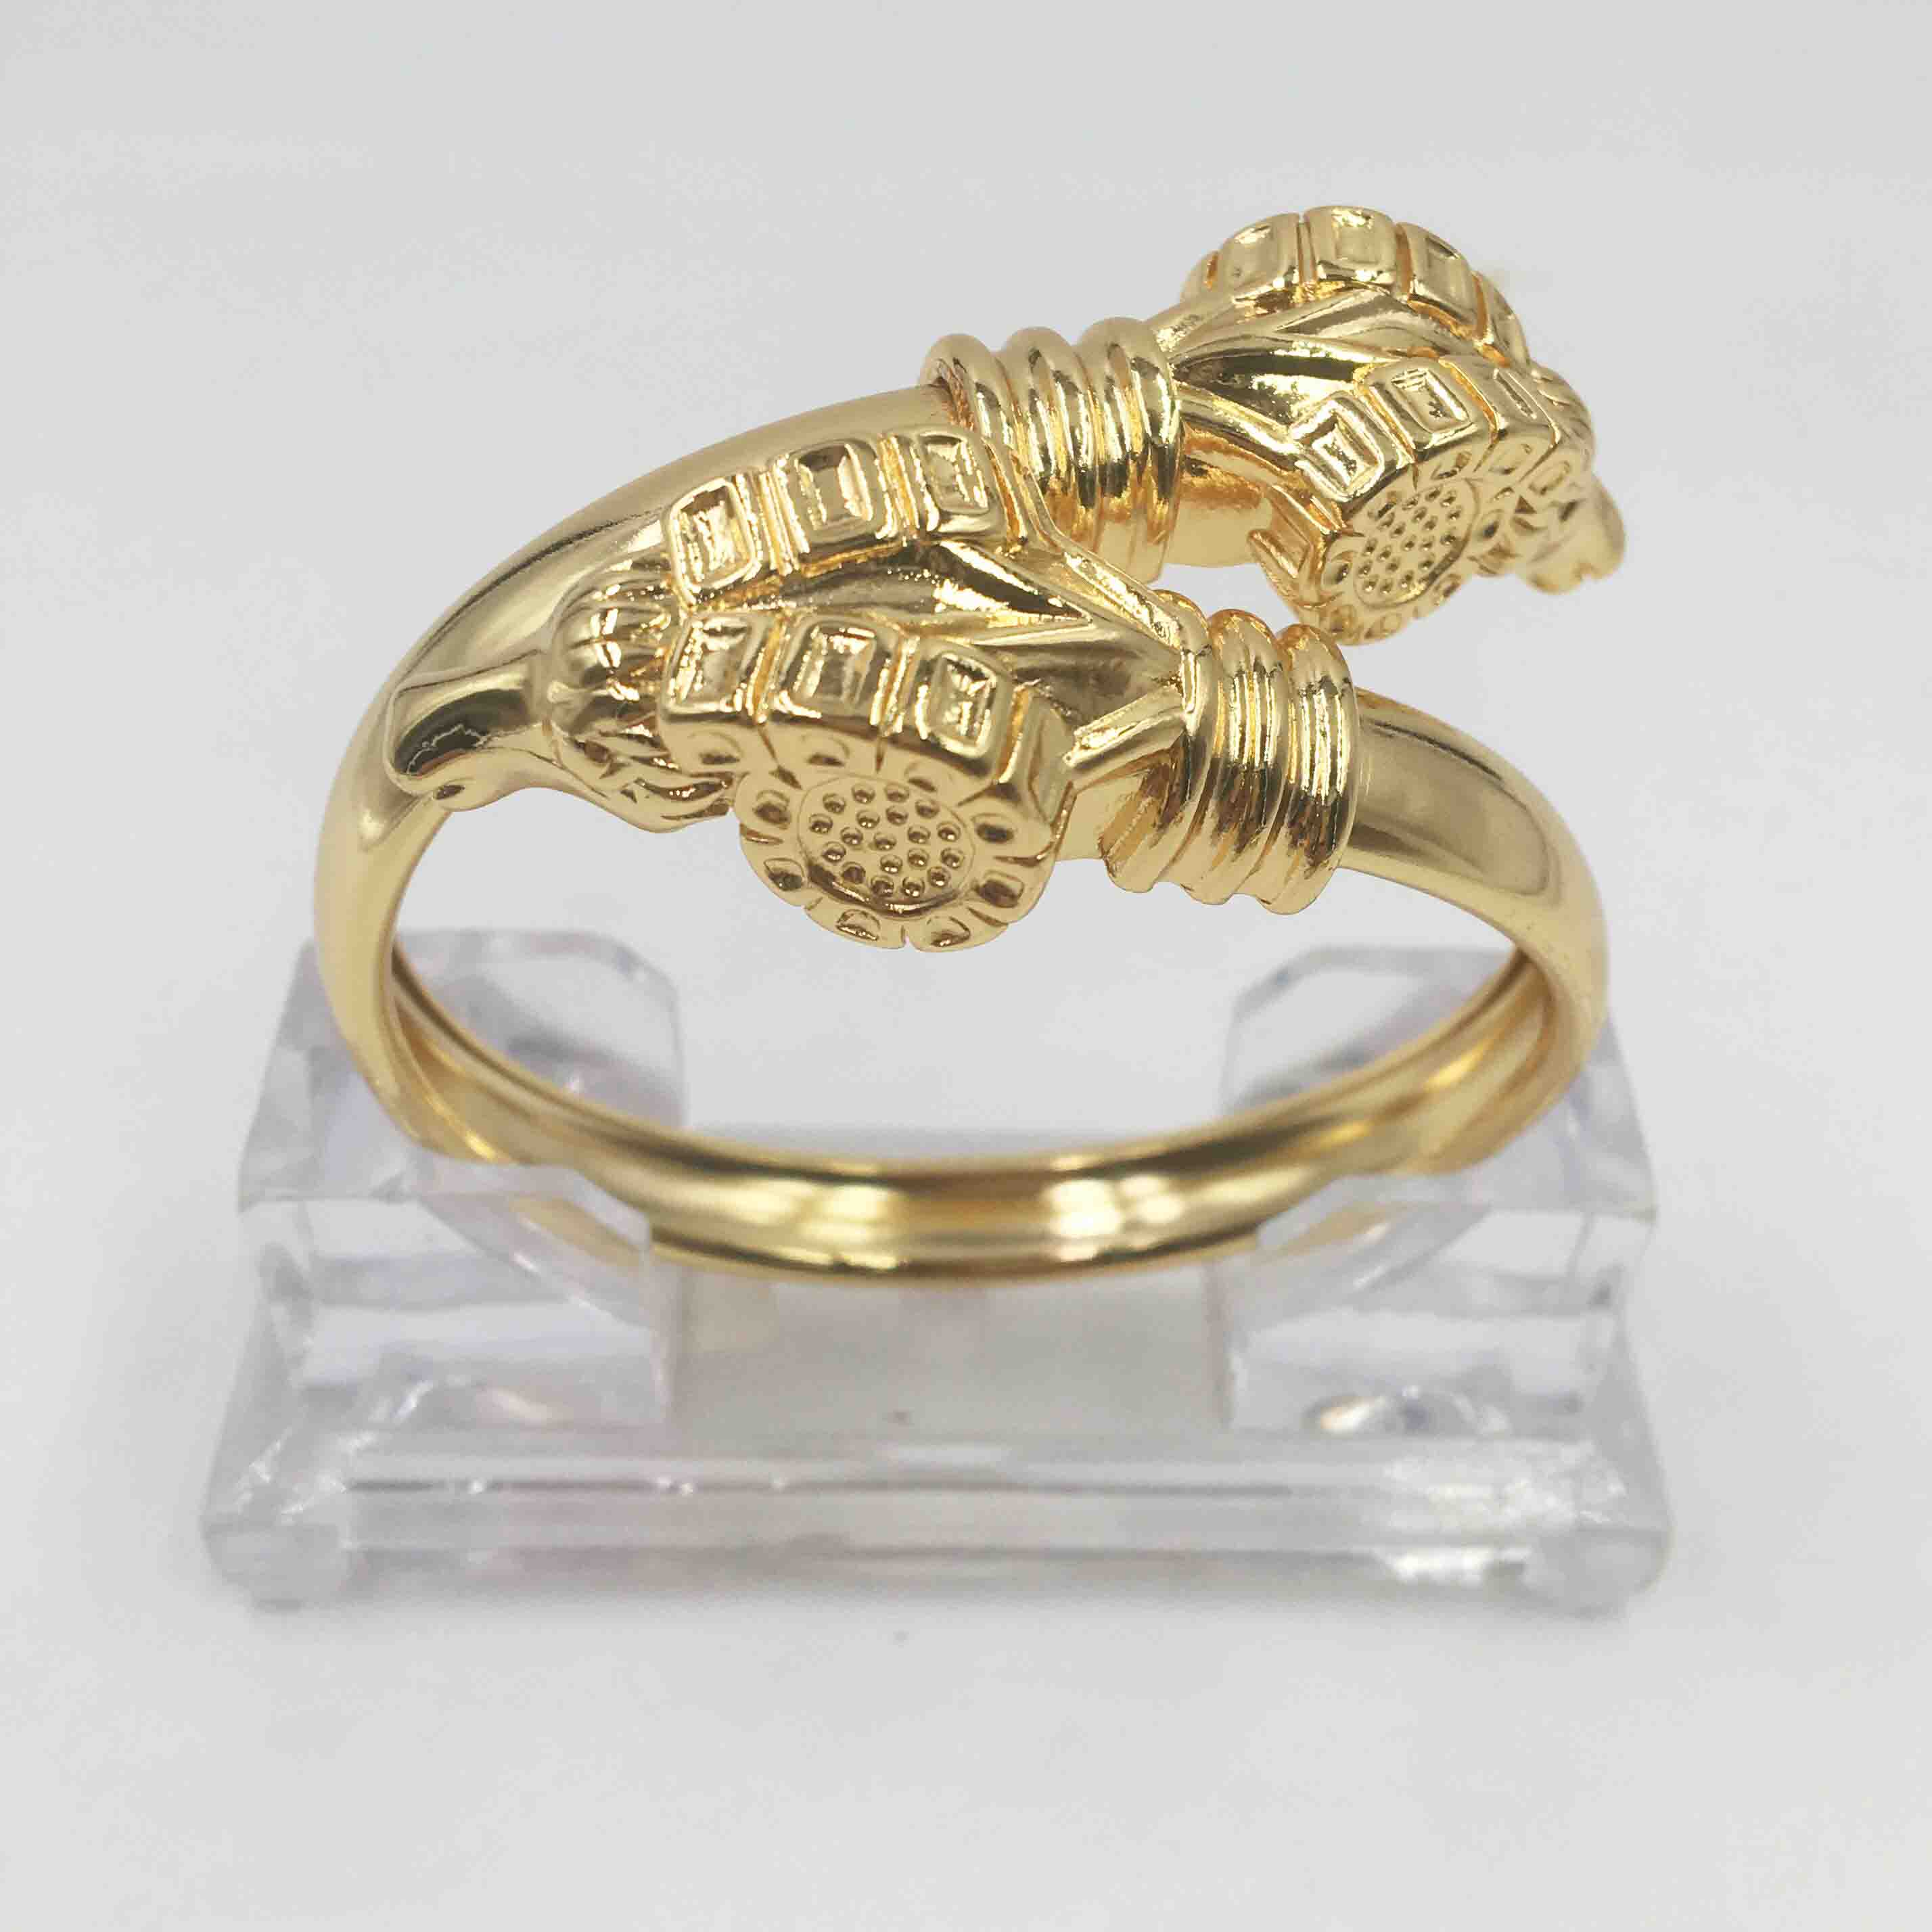 Dubai Gouden Schapen Hoofd Armband, Beschermende Kleur, Mode, Nigeriaanse Bruiloft, afrika 'S Best-Selling Sieraden Collectie, Italiaanse